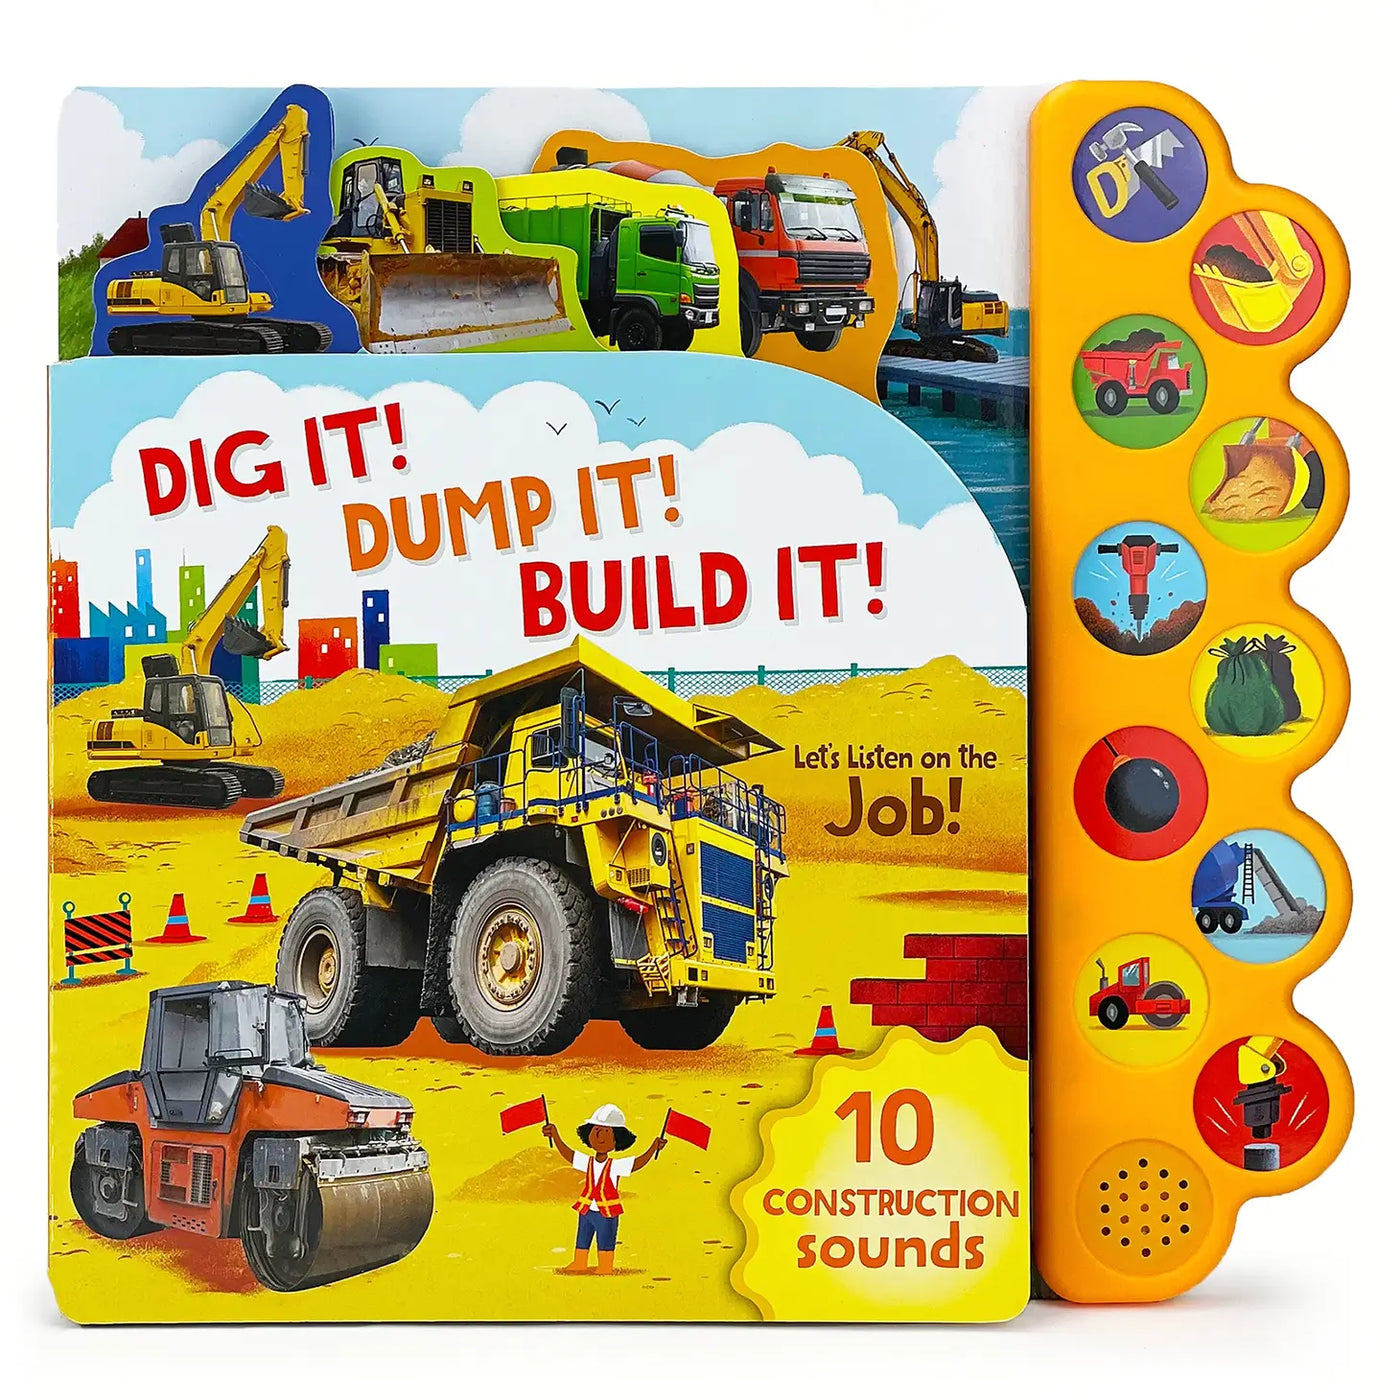 Dig It! Dump It! Build It!